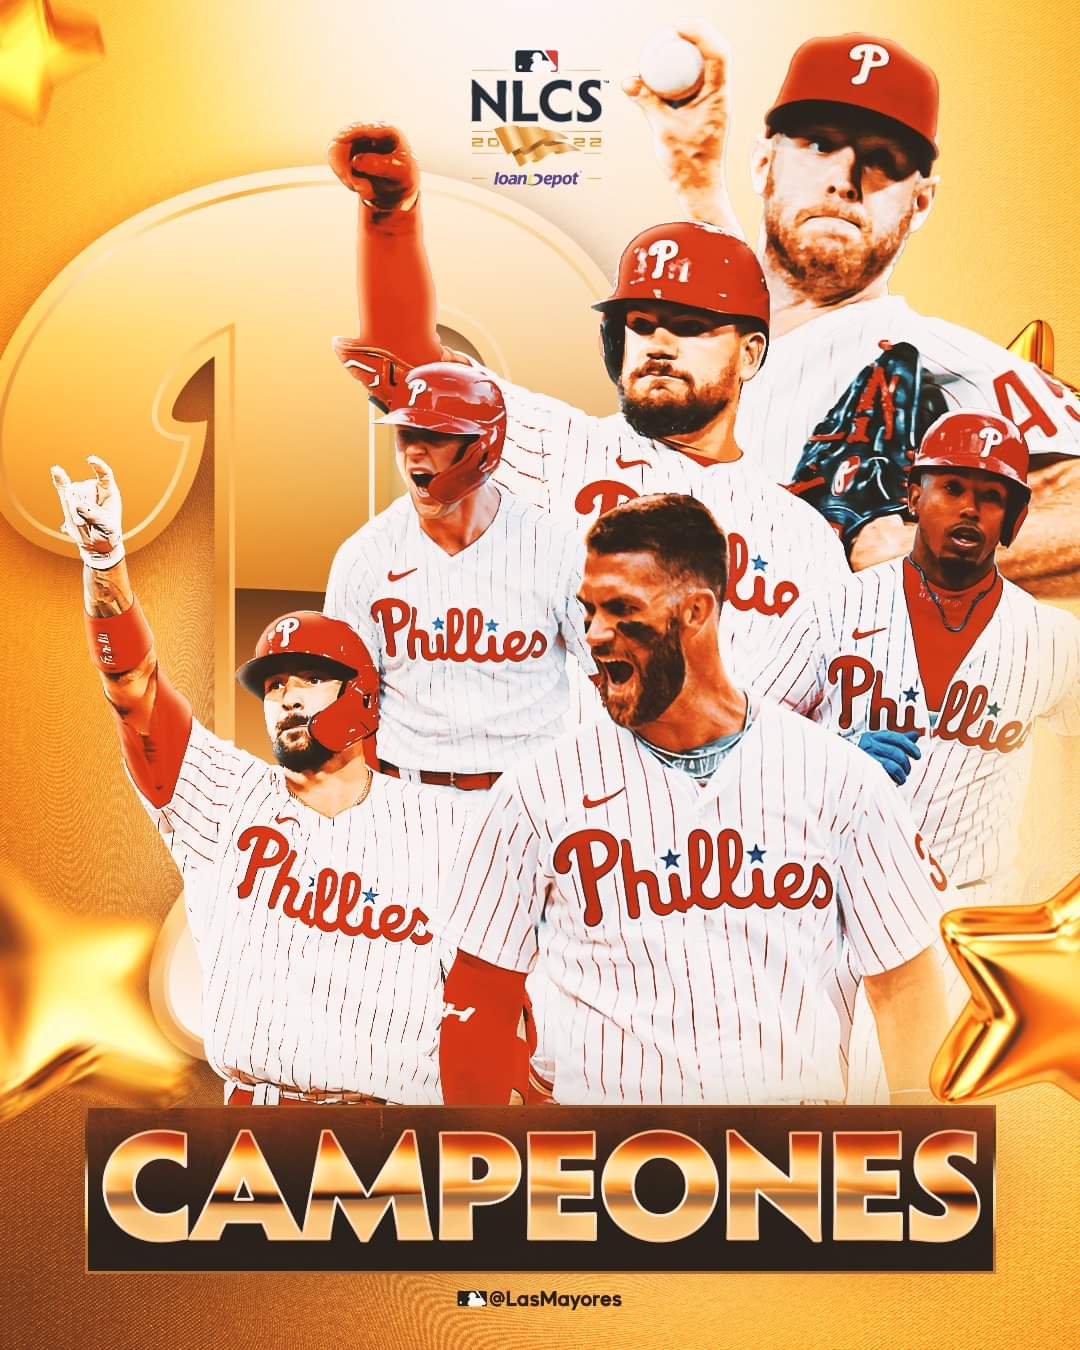 Phillies de Philadelphia, campeones de la Liga Nacional 202w